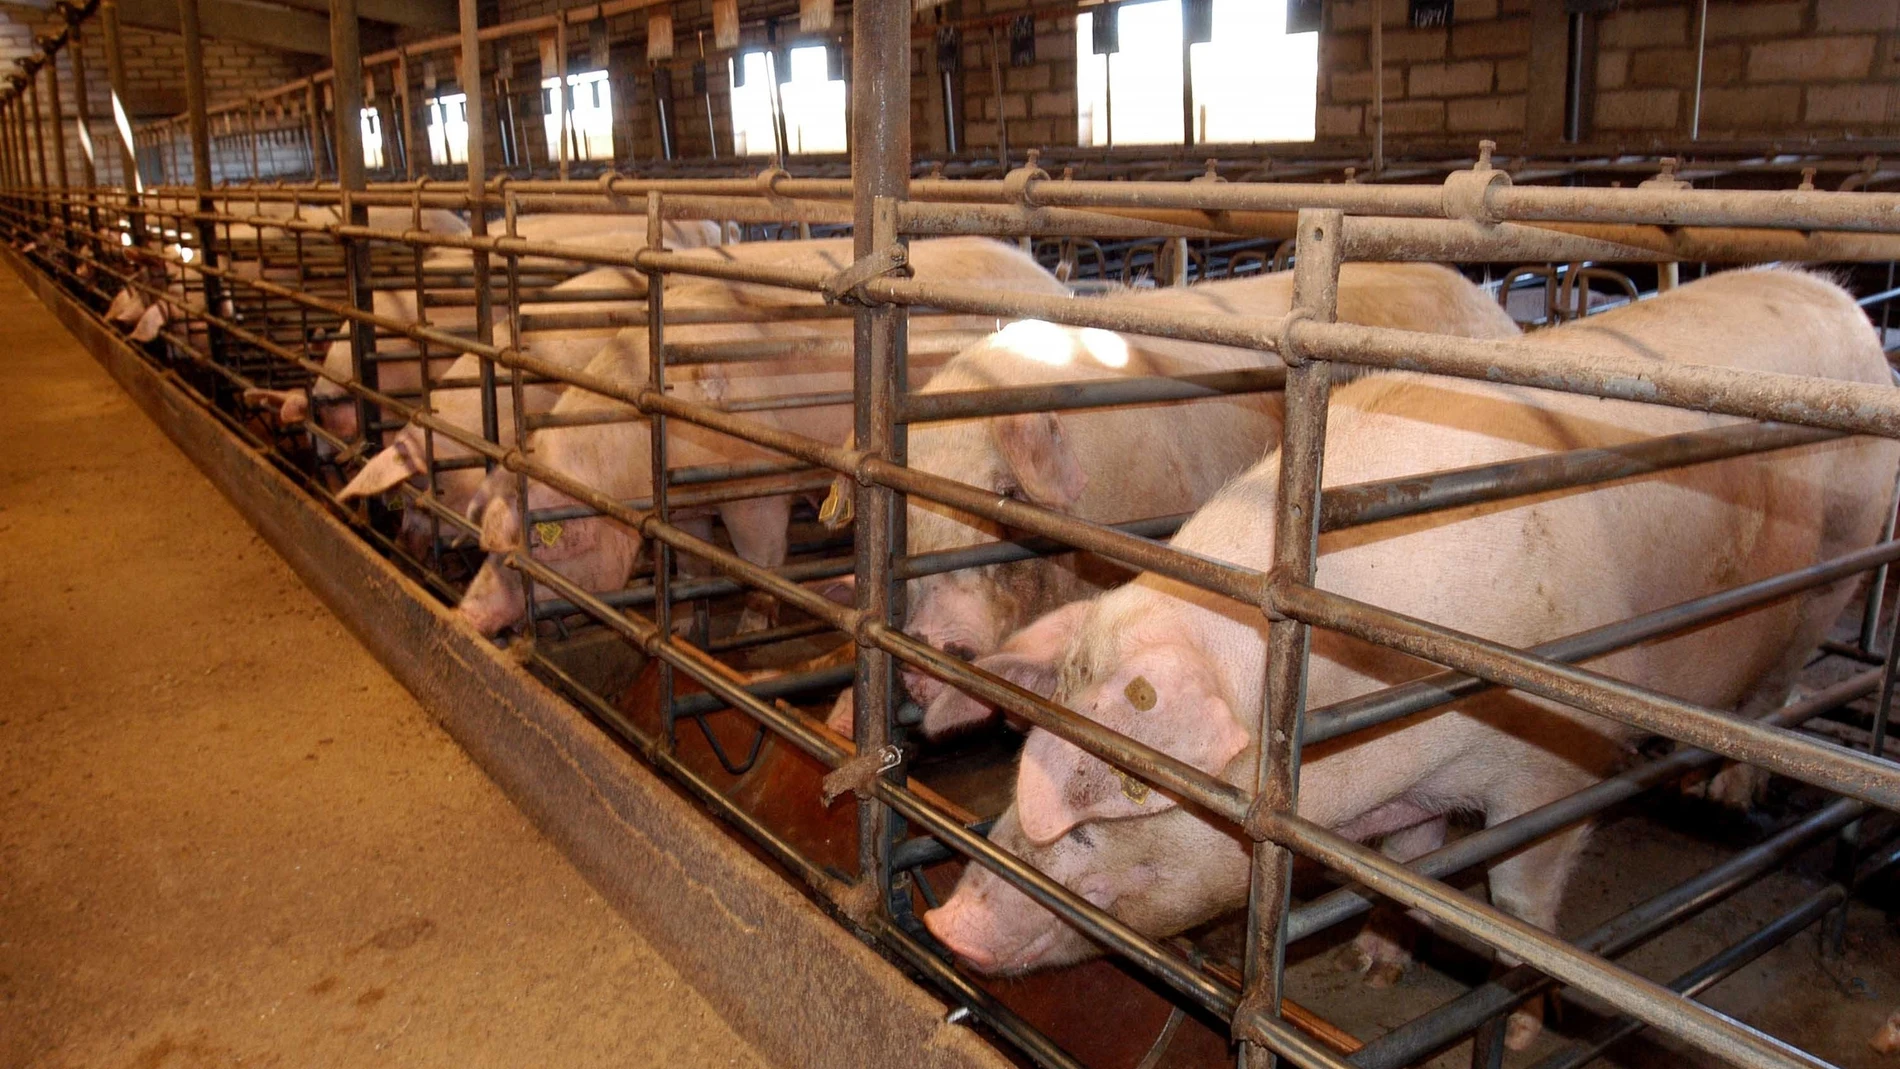 Imagen de archivo de una granja porcina.